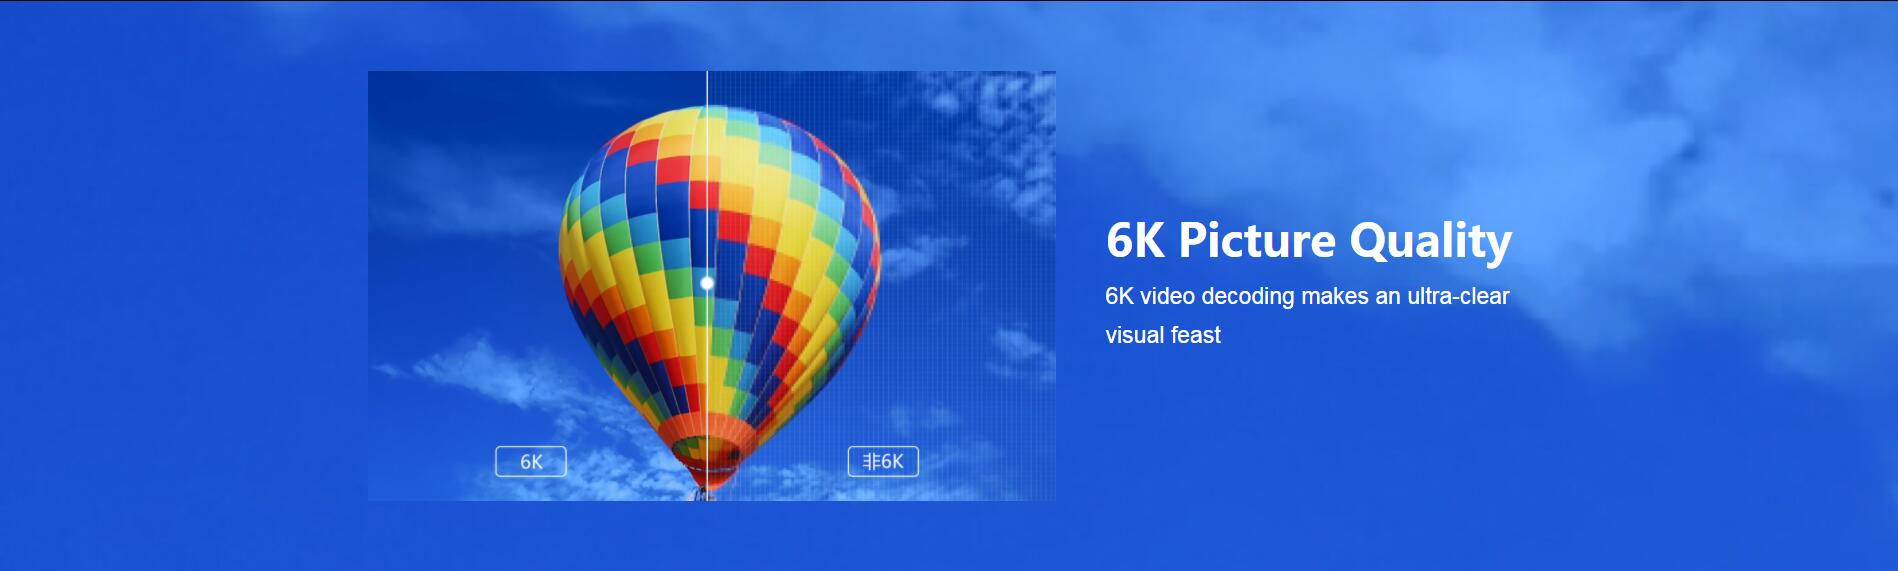 TV Box EVPAD 5Max - Qualità dell'immagine 6K